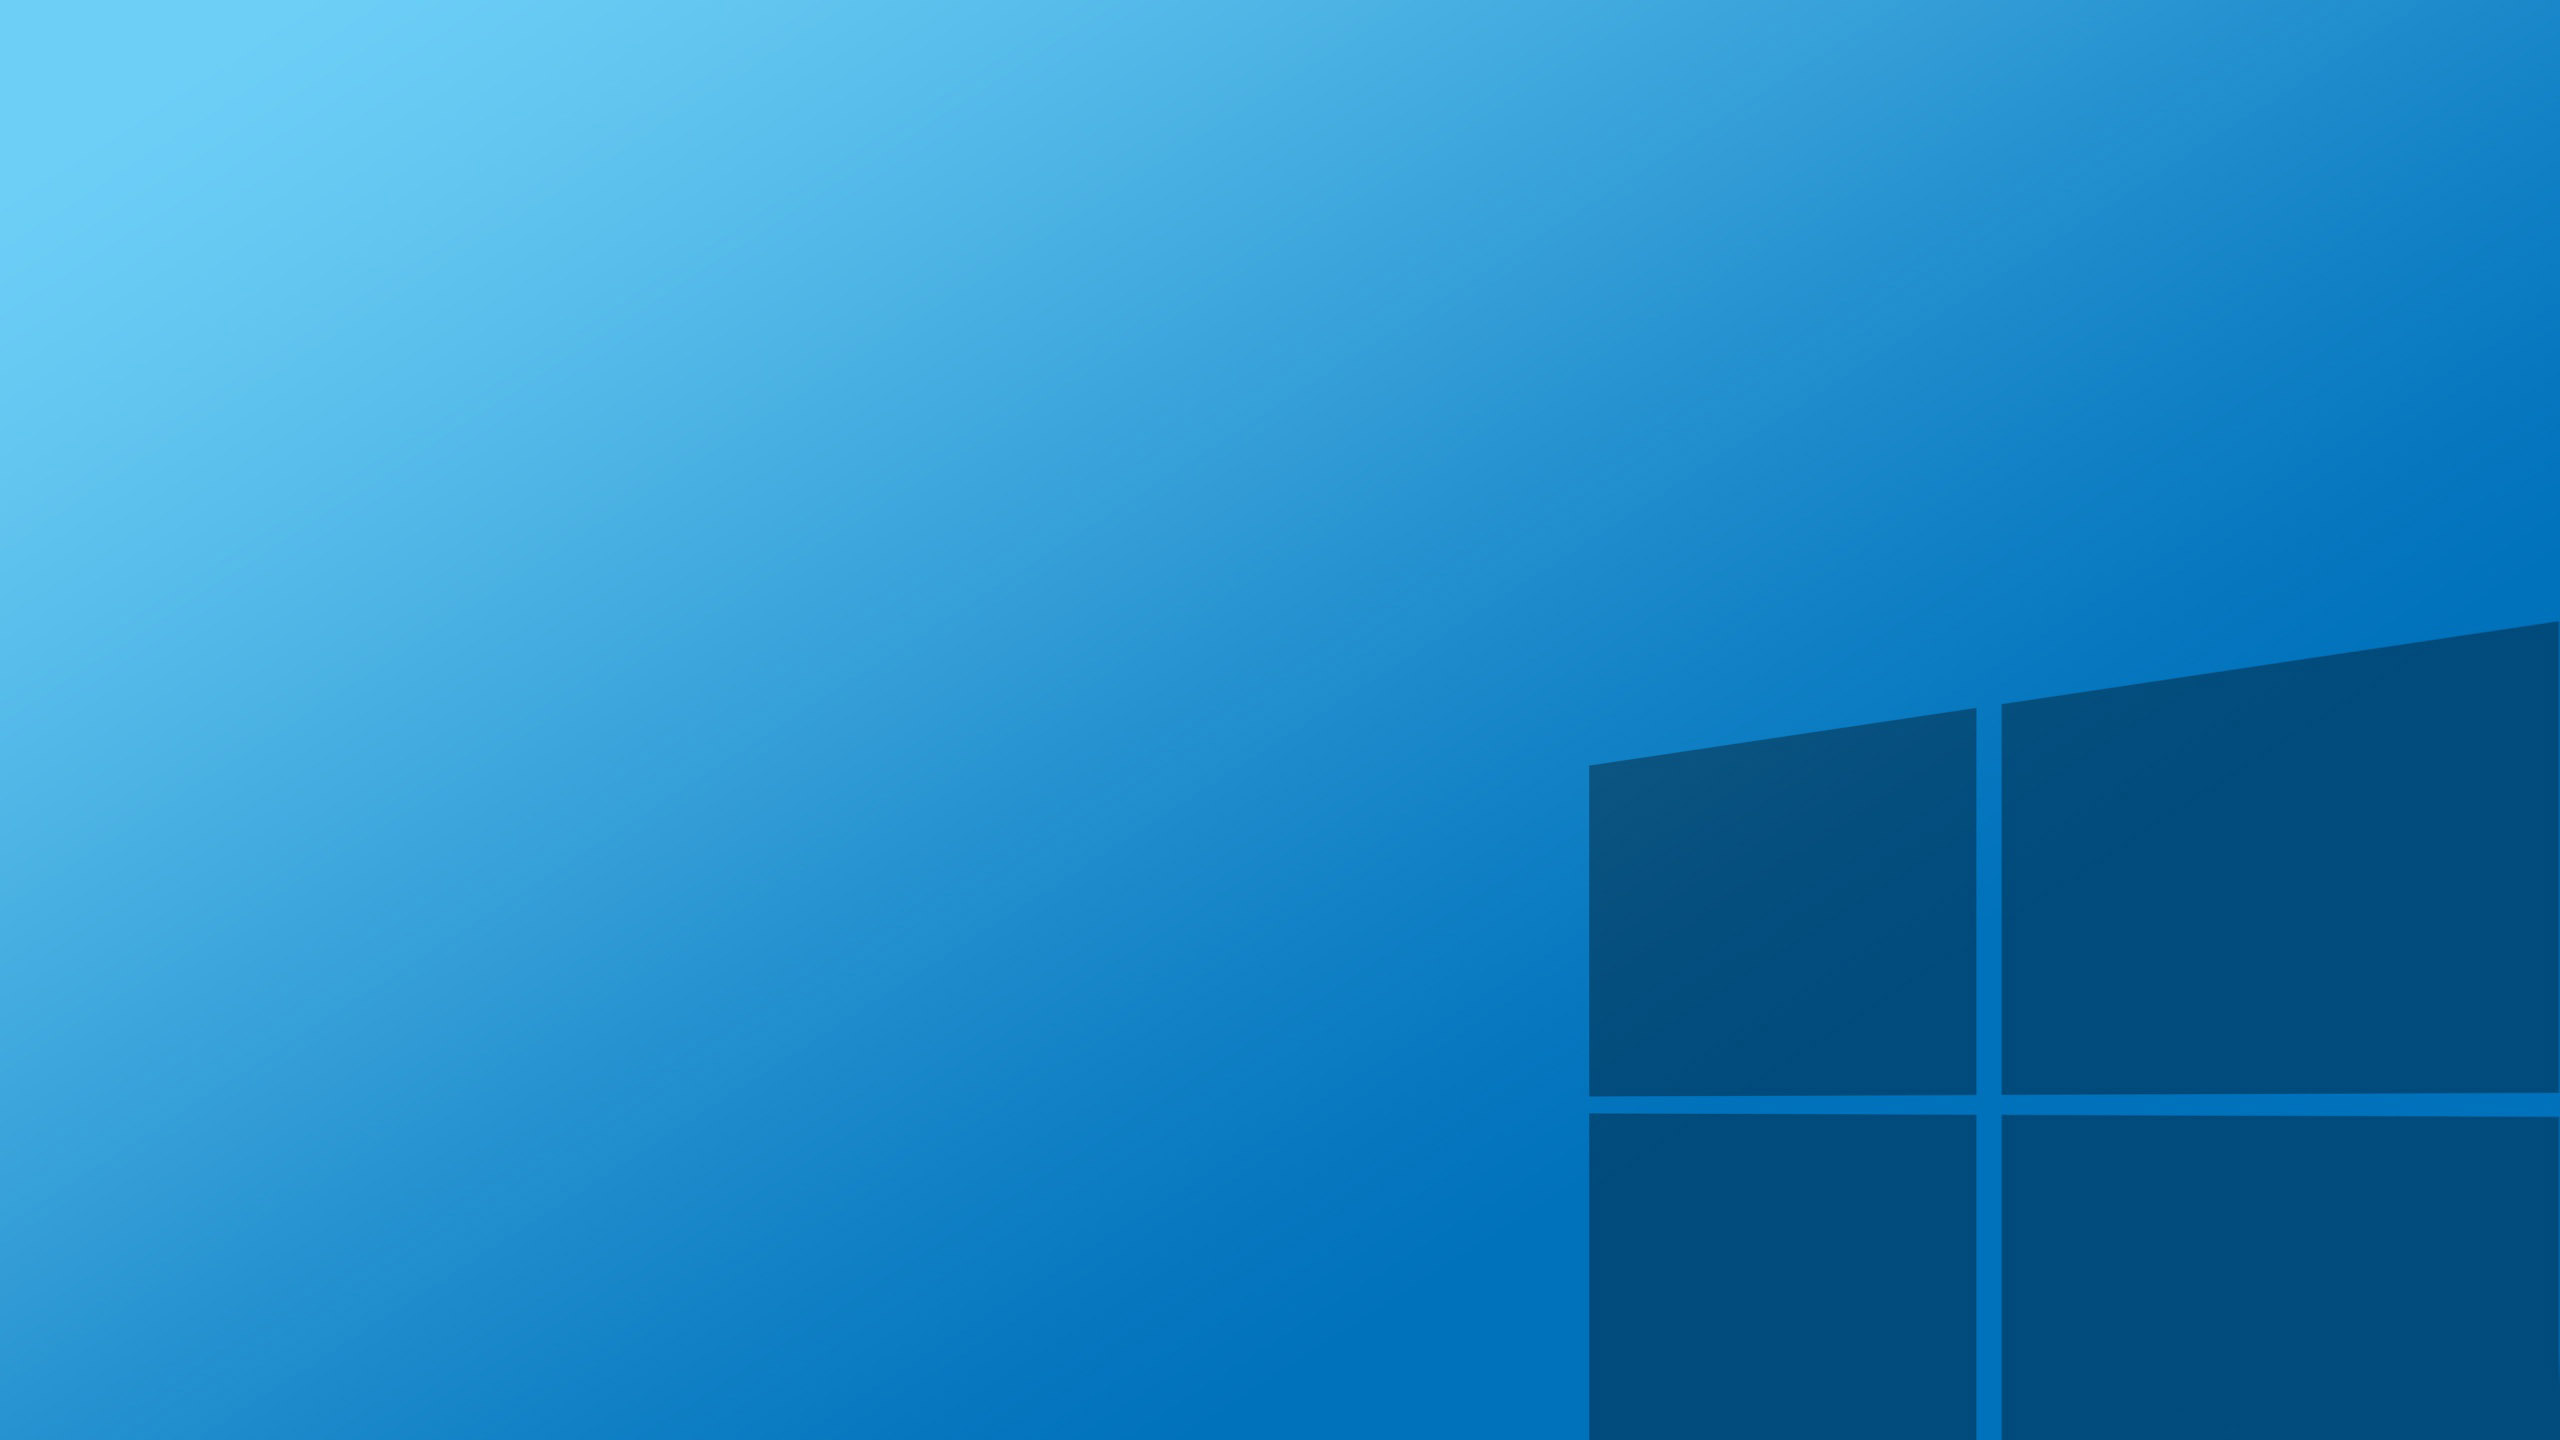 Tải Windows 10 miễn phí và khám phá ngay những tính năng mới cùng giao diện đẹp mắt của hệ điều hành này.